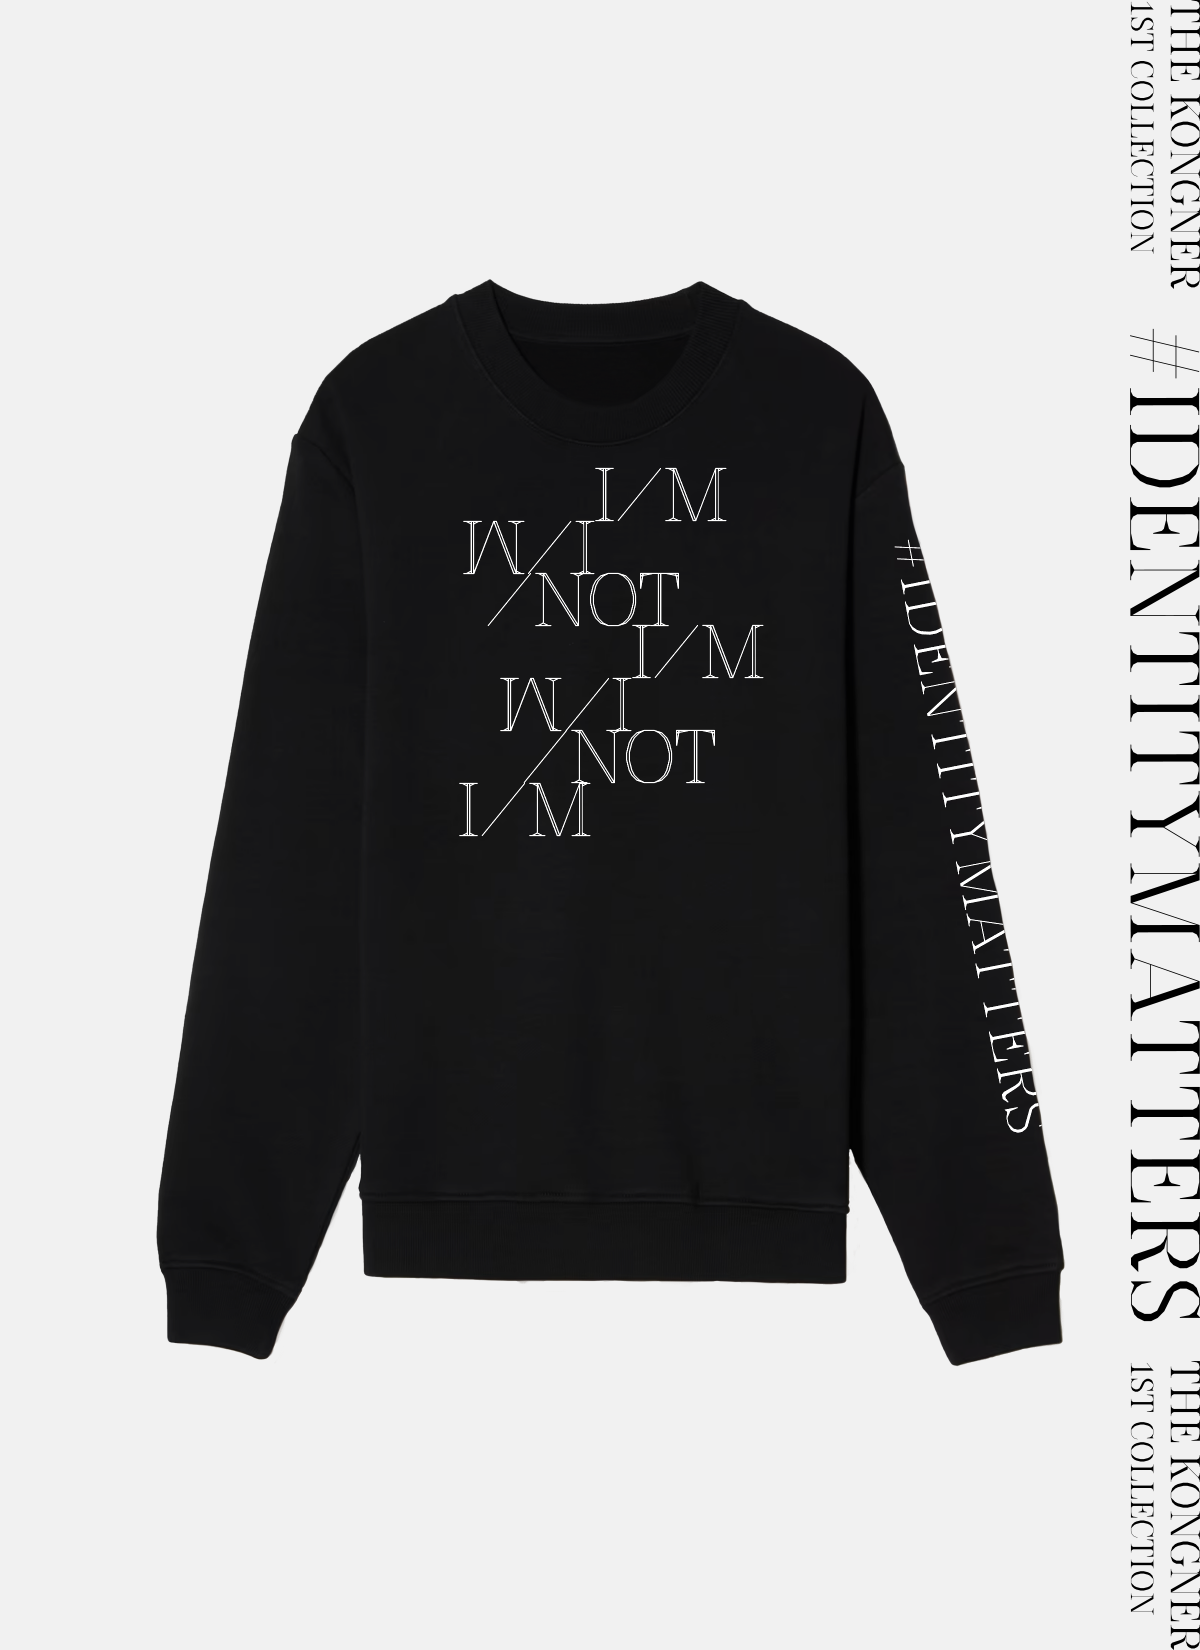 “I/M not I/M” Sweatshirt